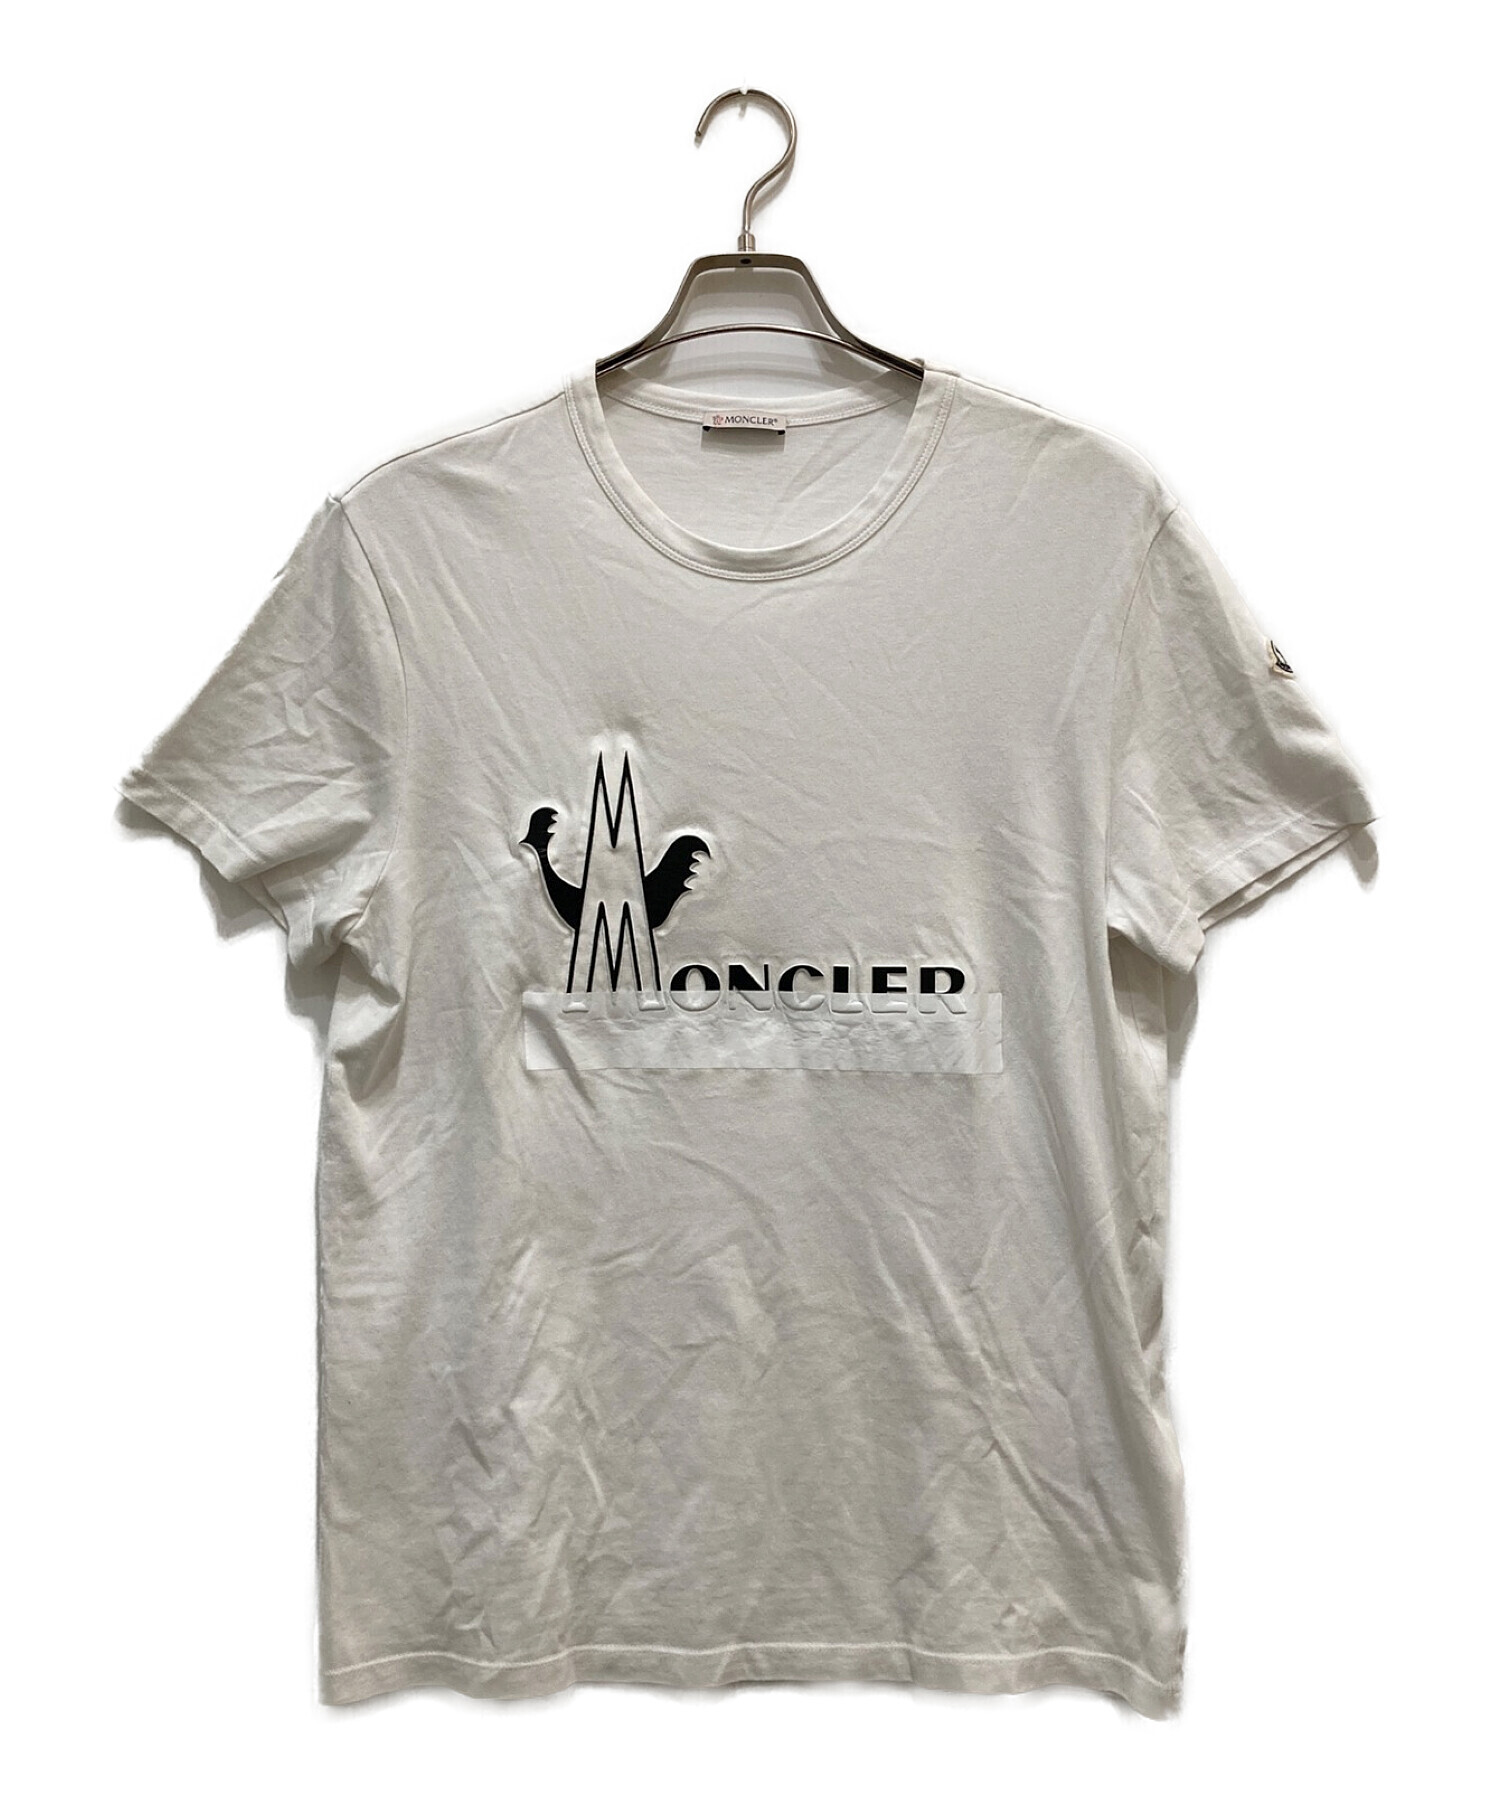 【2023SS】MONCLER モンクレールロゴ Tシャツ ホワイト